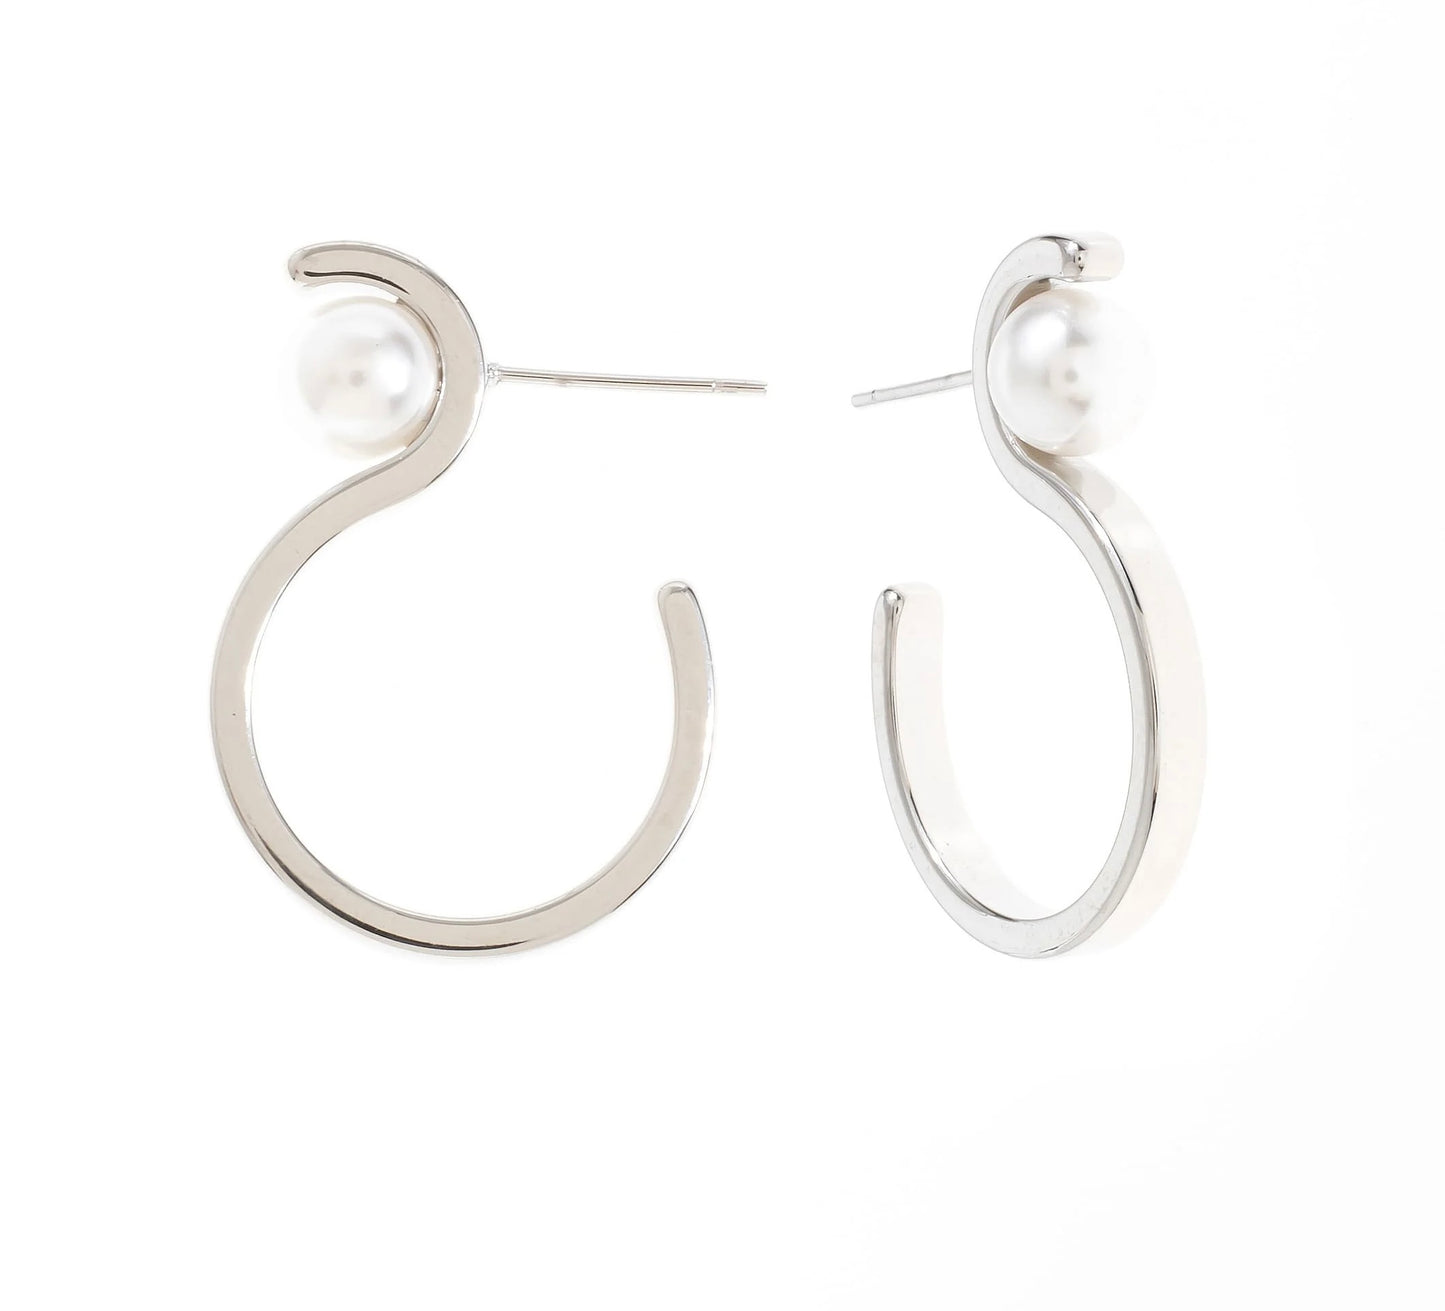 'S' Shaped Hoop Pearl Stud Earrings